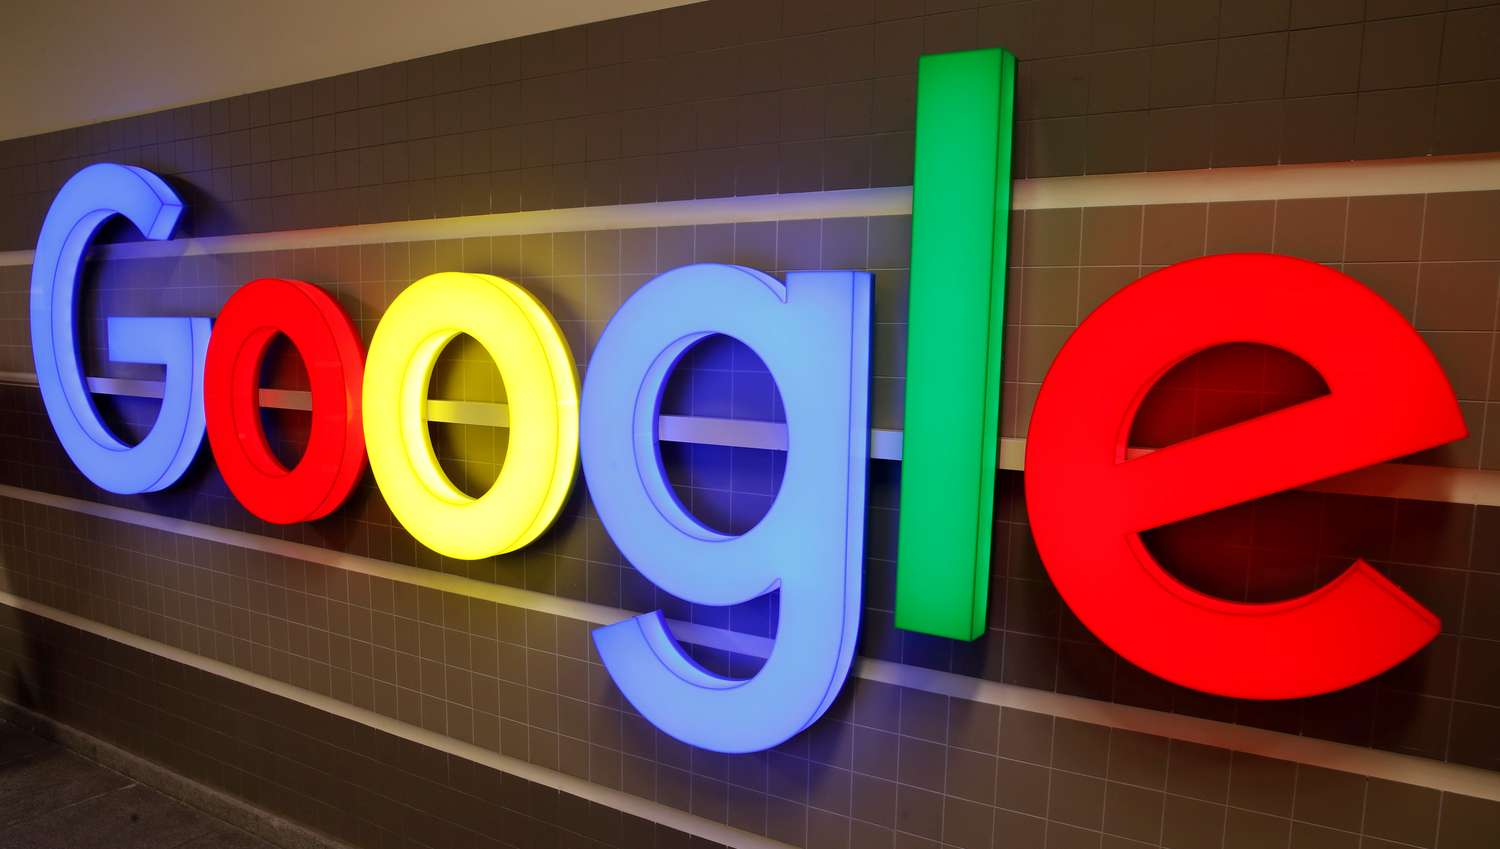 Google despide a experta en ética de su división de Inteligencia Artificial